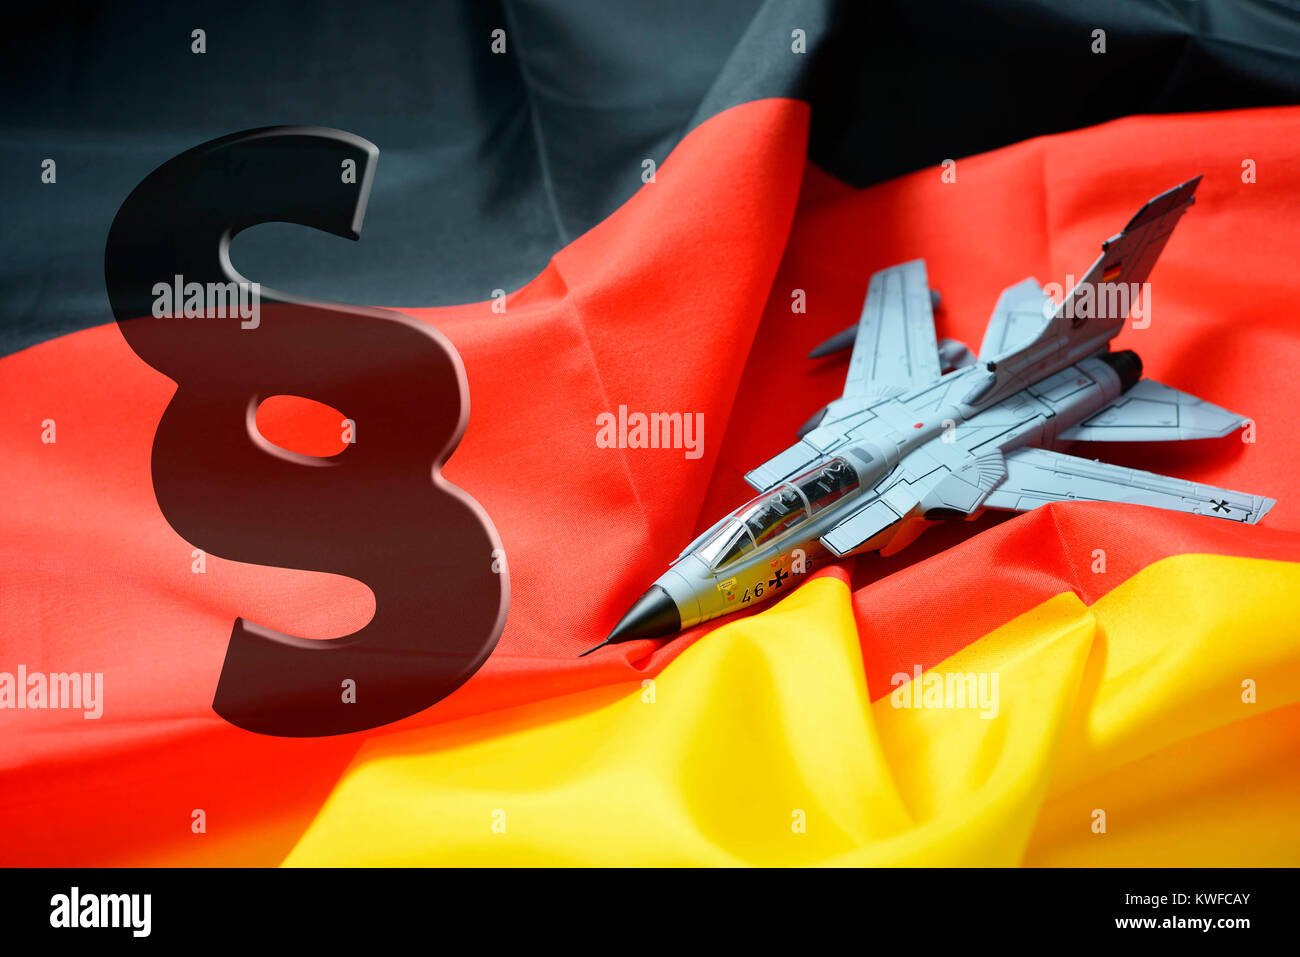 Tornado sulla bandiera della Germania con la sezione segno, assegnazione degli esteri delle forze armate, Tornado auf Deutschlandfahne mit Paragraphenzeichen, Auslandseinsat Foto Stock